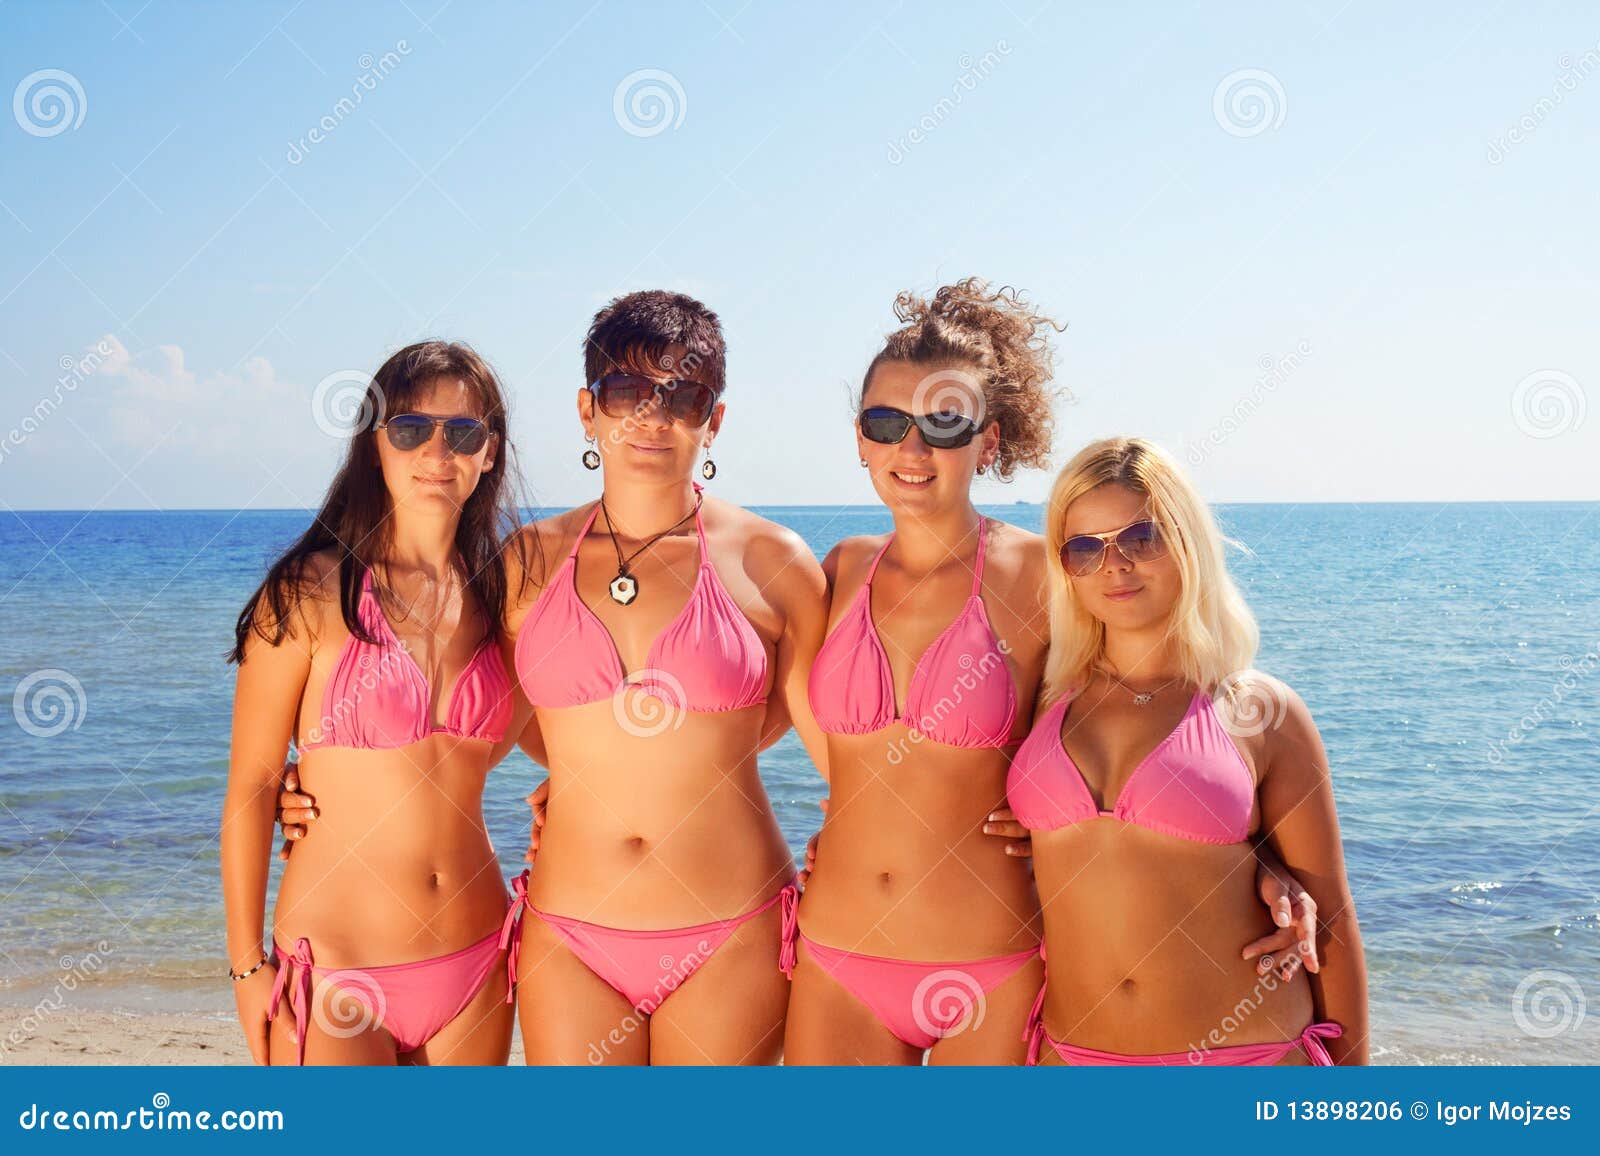 young girls in bikinis on beach